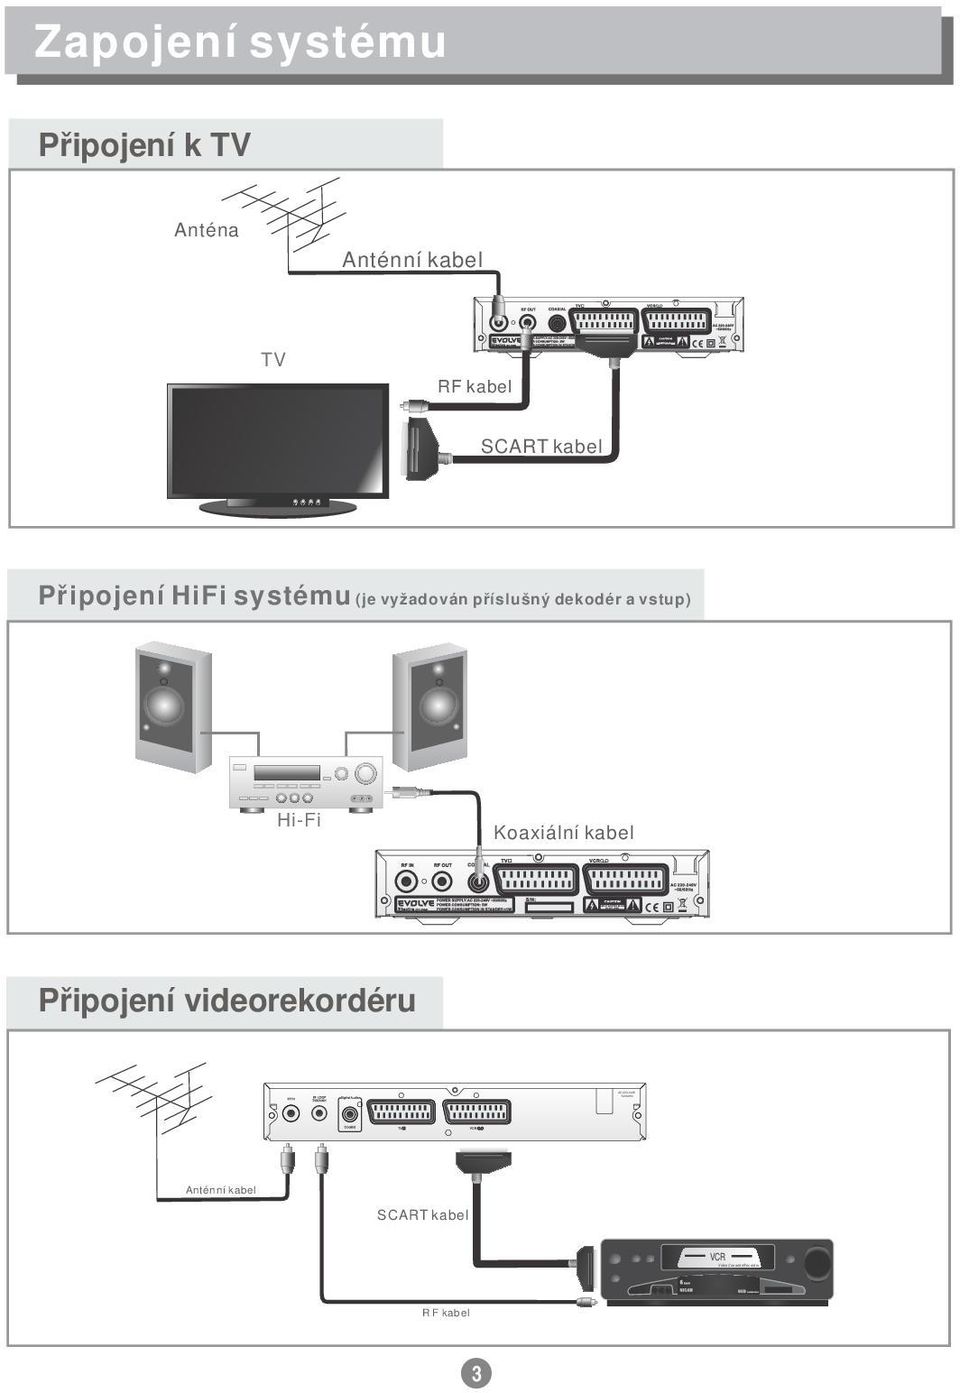 Připojení HiFi systému (je vyžadován příslušný dekodér a vstup)